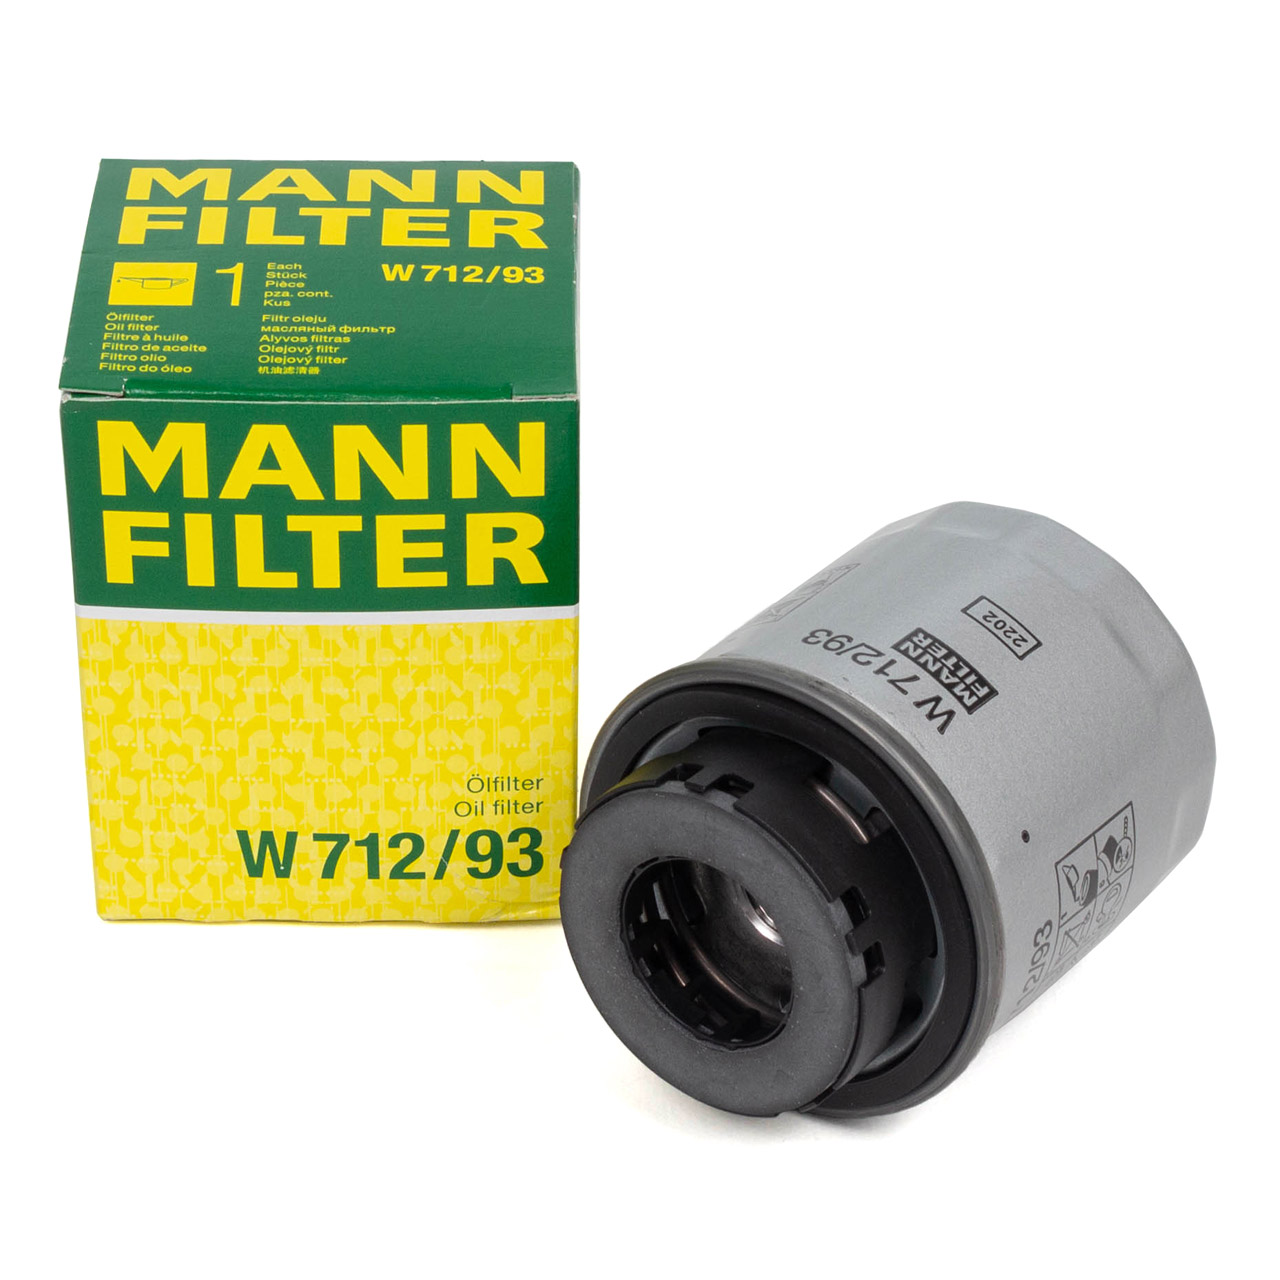 MANN-FILTER Ölfilter - W 712/93 